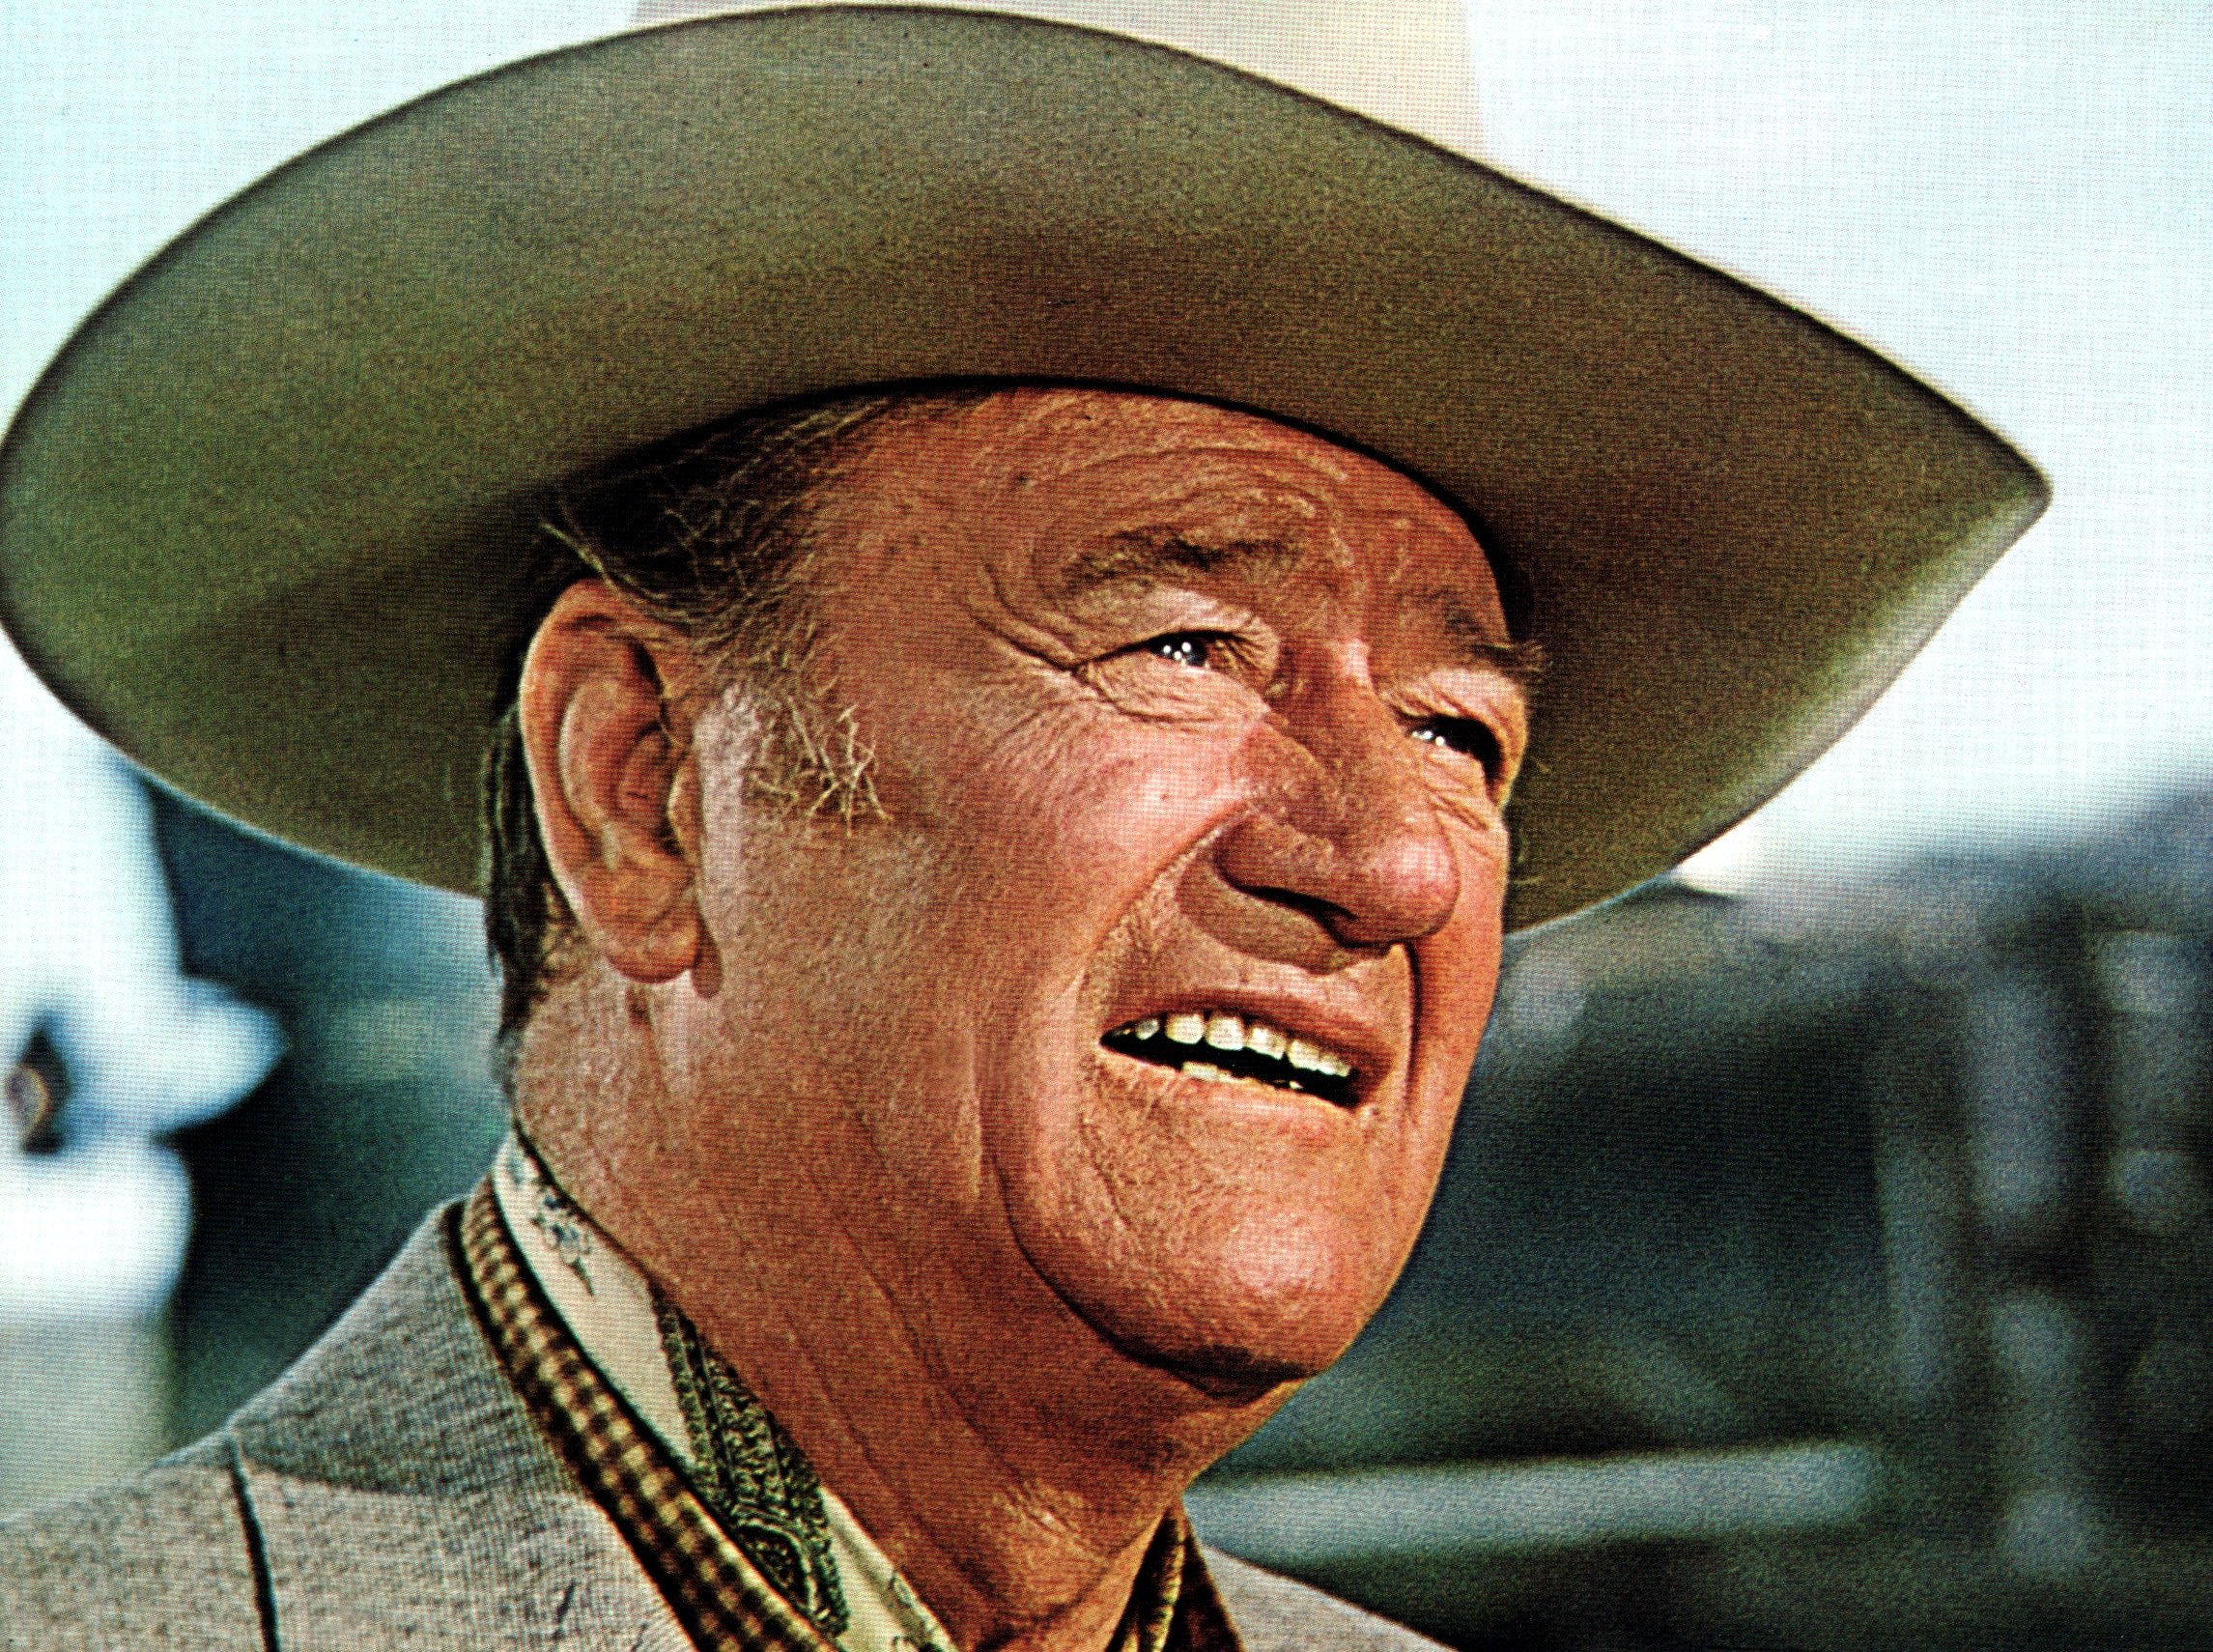 BIG JAKE, John Wayne, 1971